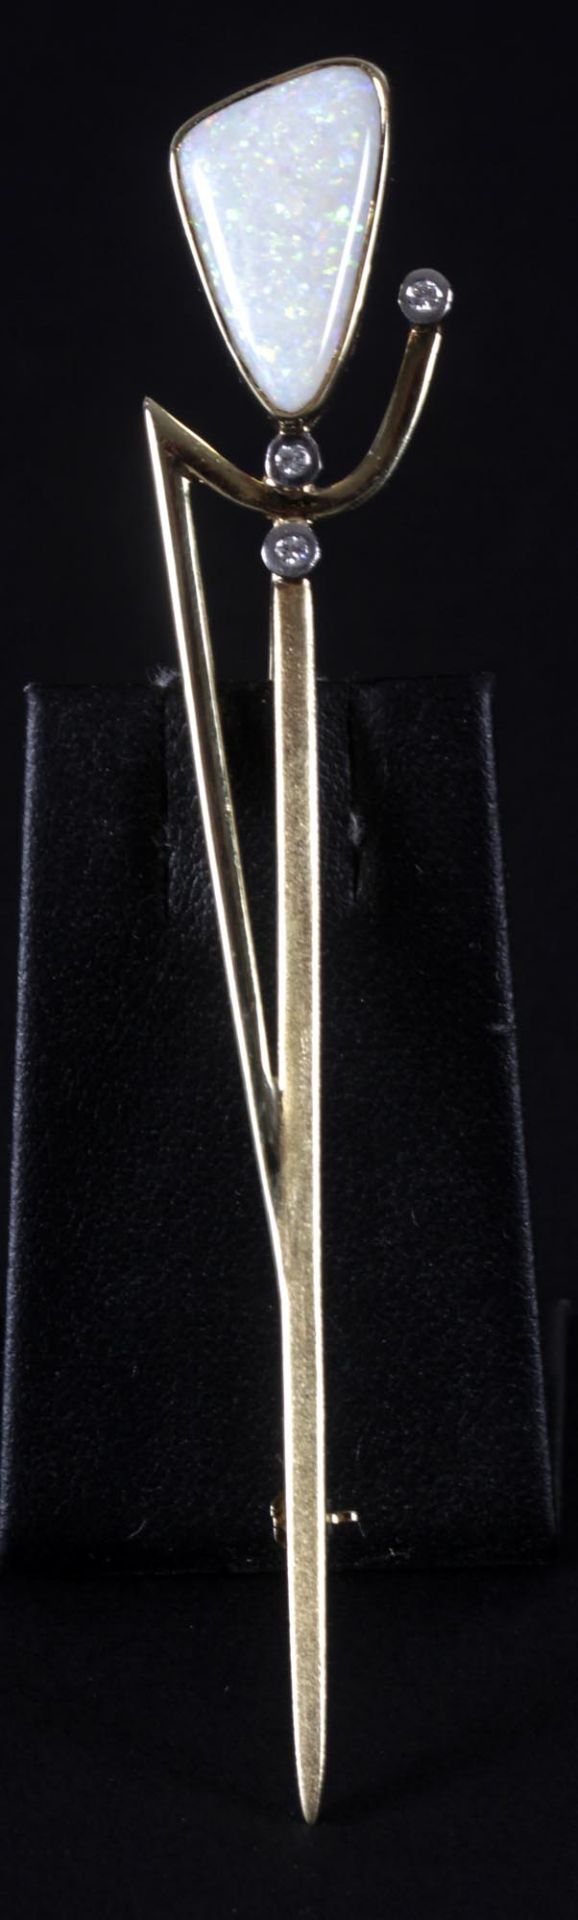 Große Nadel mit Opal und kleinen Diamanten, 585er GG, gestempeltL: 10 cm, Gewicht: 9,3 g